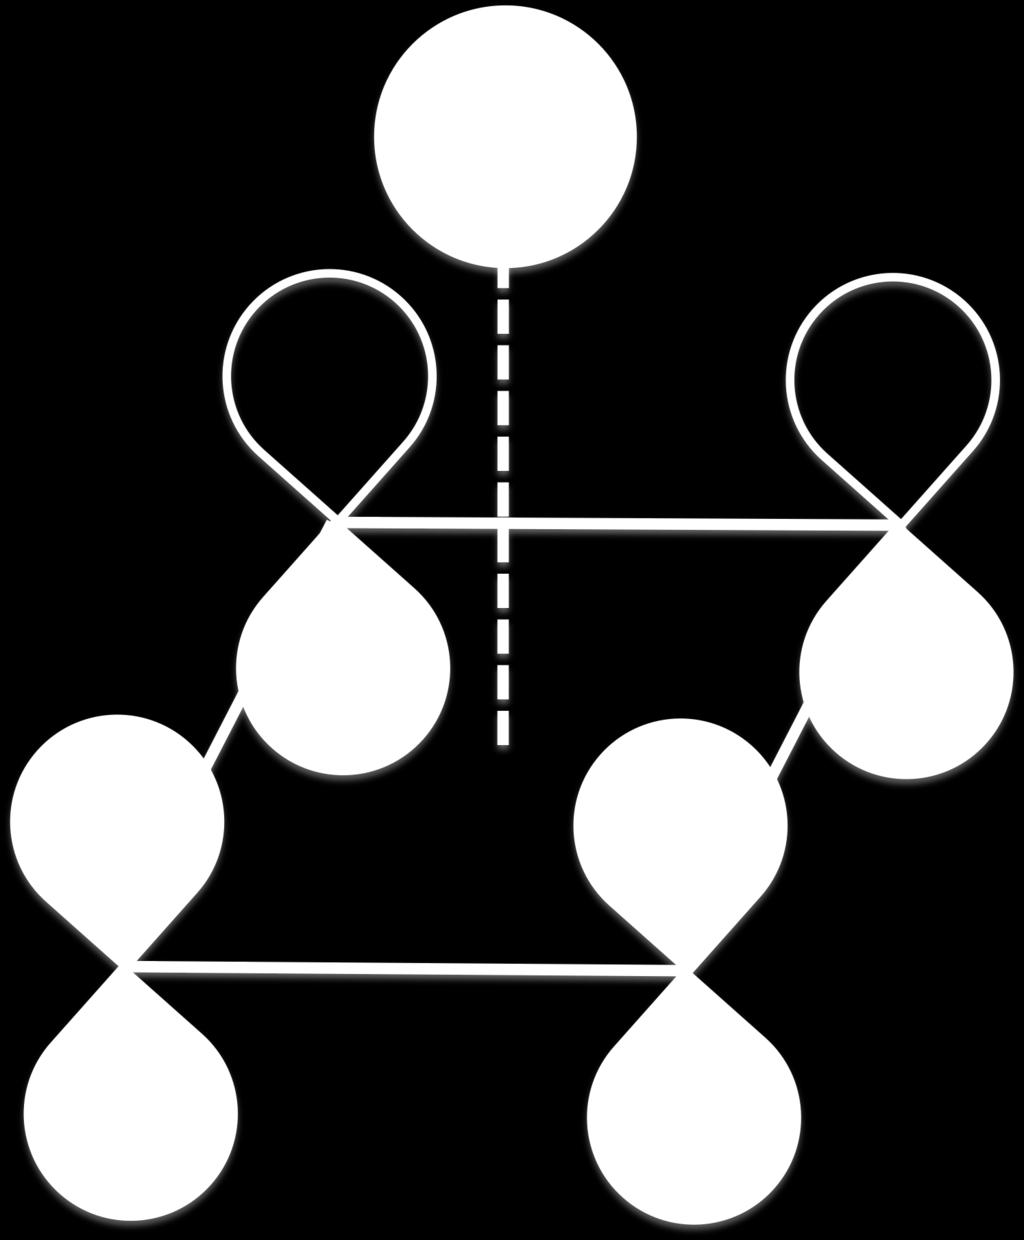 2b. Zero nodes: One node: One